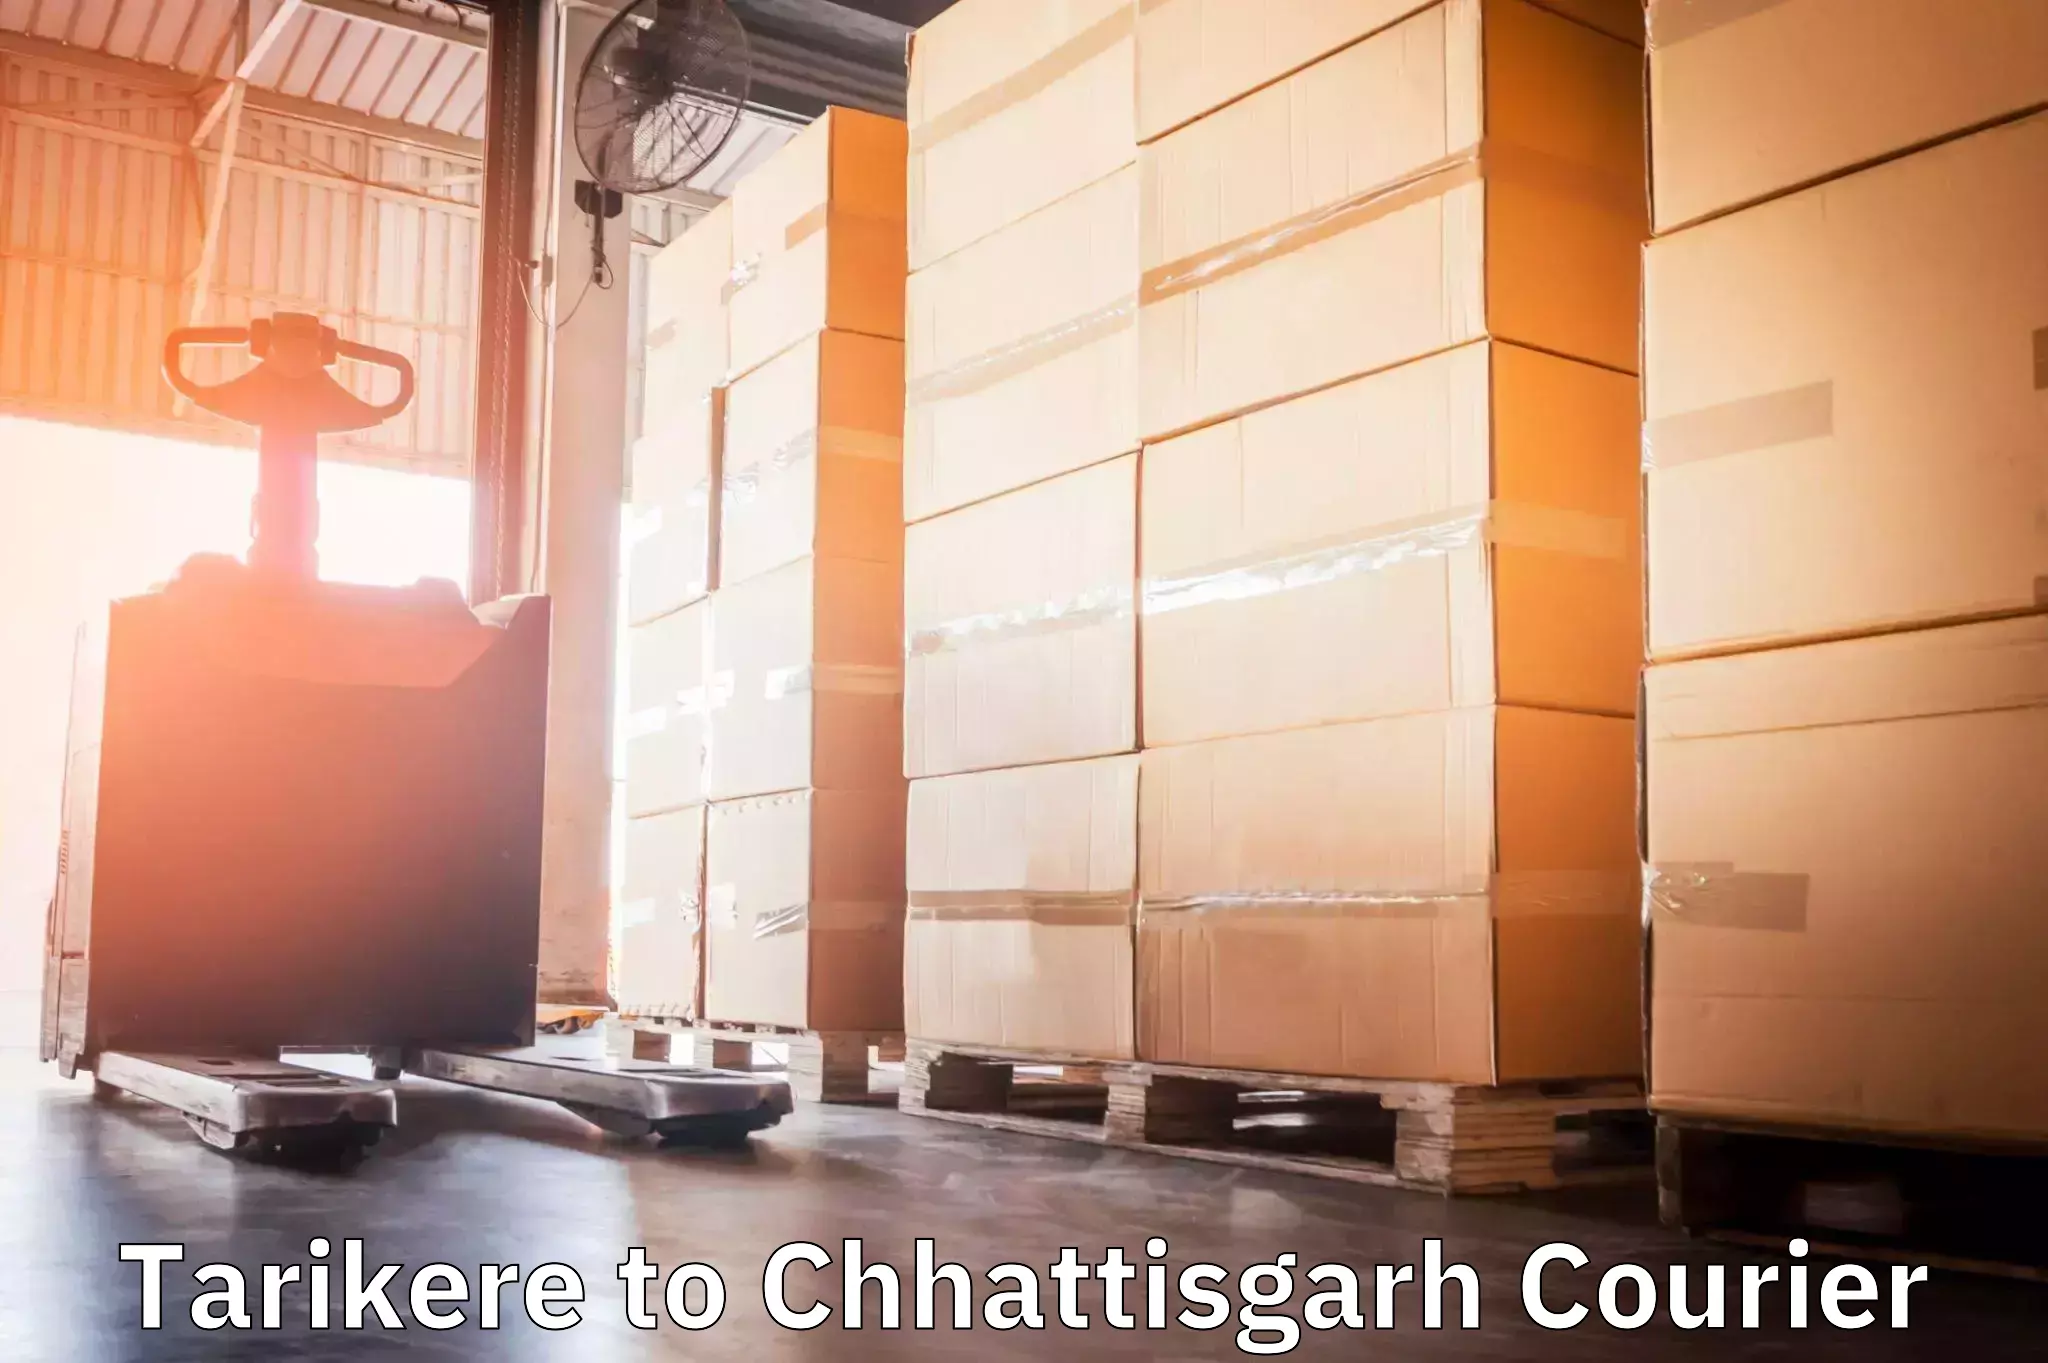 Business shipping needs in Tarikere to Raigarh Chhattisgarh